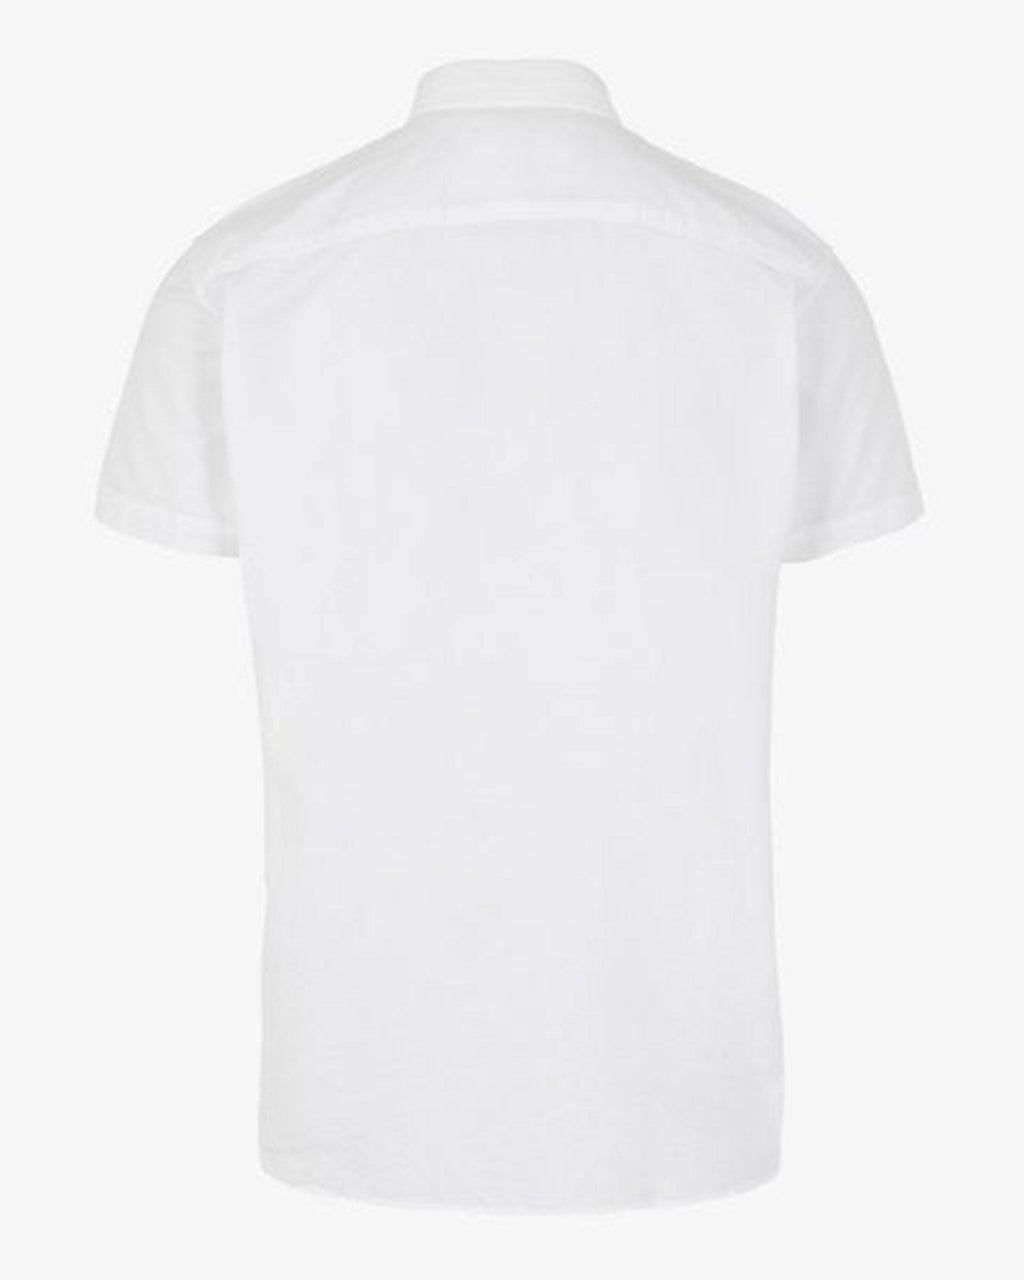 Klassiek shirt met korte mouwen - wit